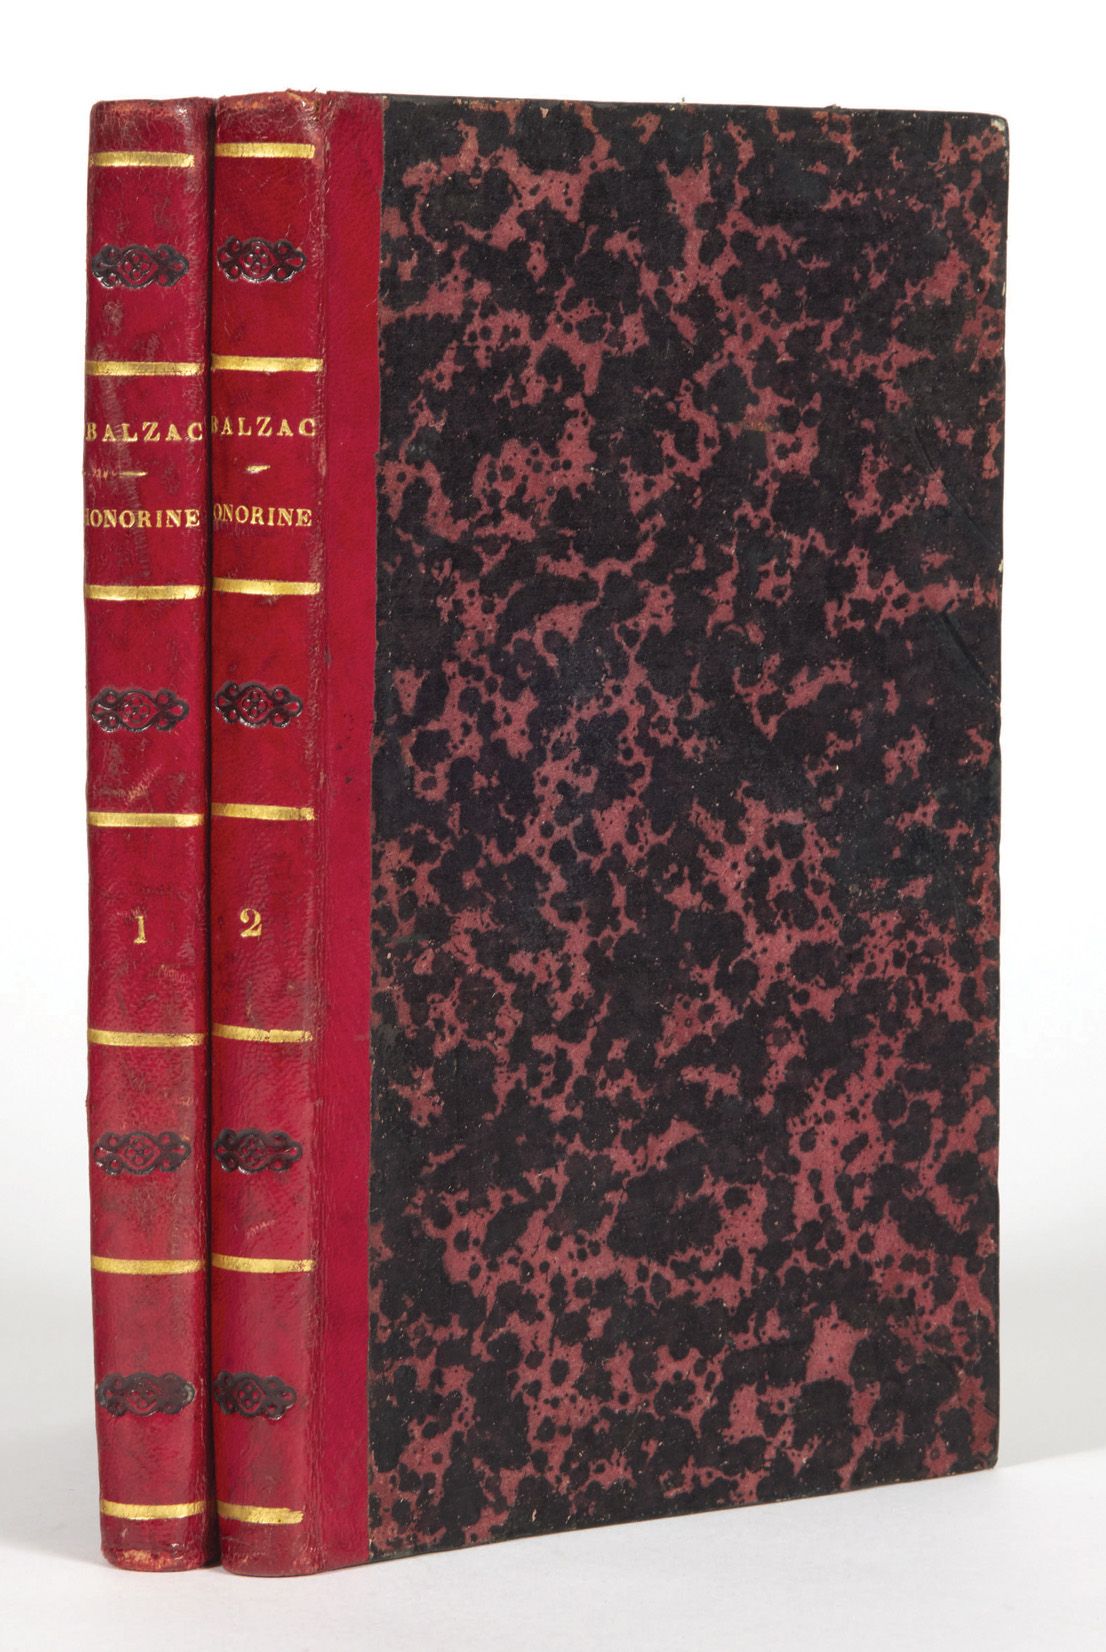 Honoré de BALZAC. Honorine. Paris, De Potter, 1844.
2 volumes in-8: demi-chevret&hellip;